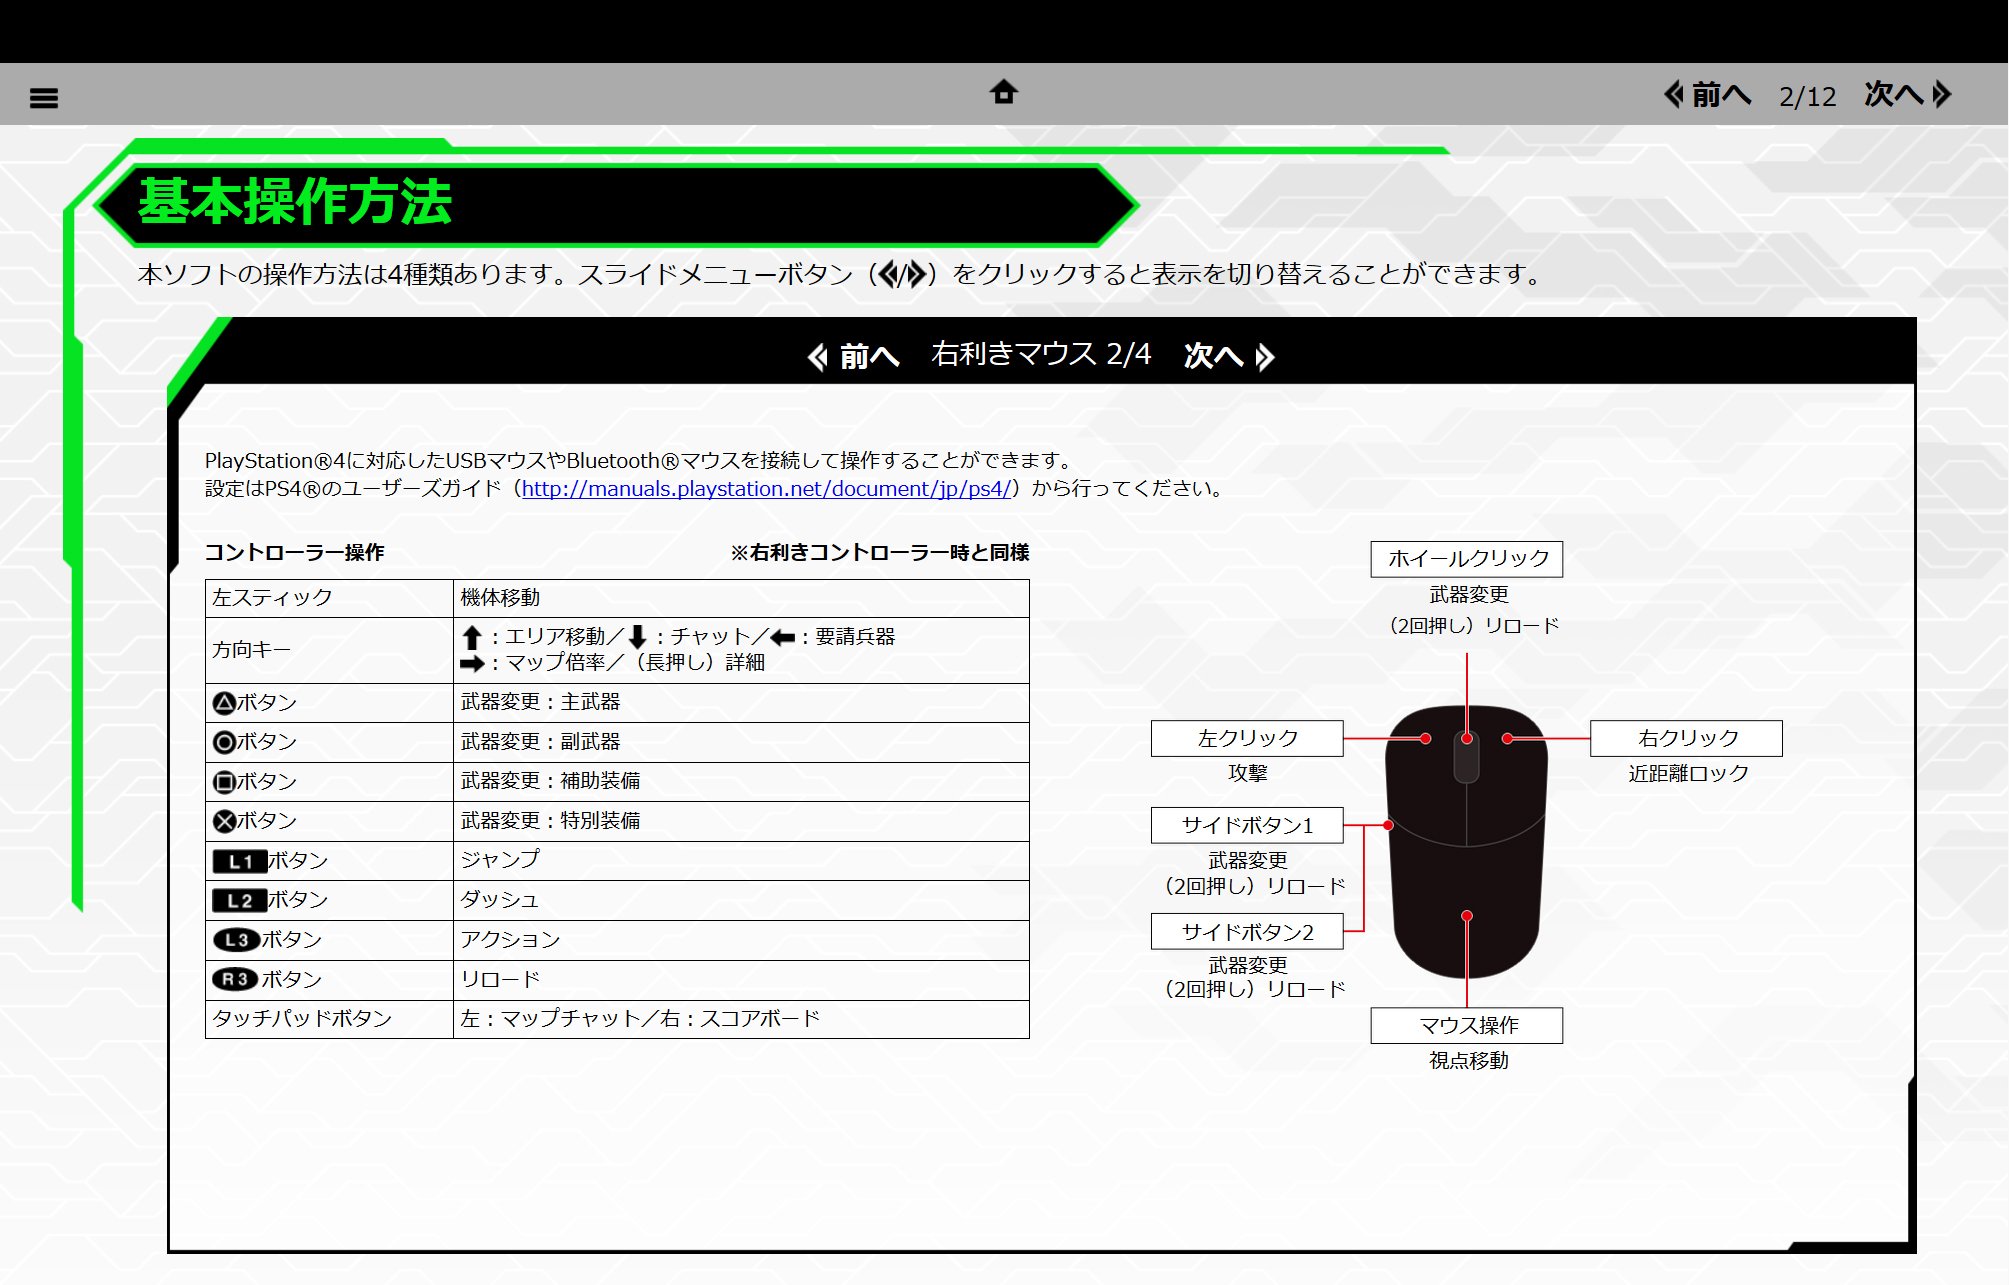 青木 Seiji Aoki 操作方法について Dualshock 4とマウス の操作方法です マニュアルから一部抜粋 また コンフィグでキーアサインを変更することも可能です 自分にあったベストな操作方法を見つけて頂ければと思います